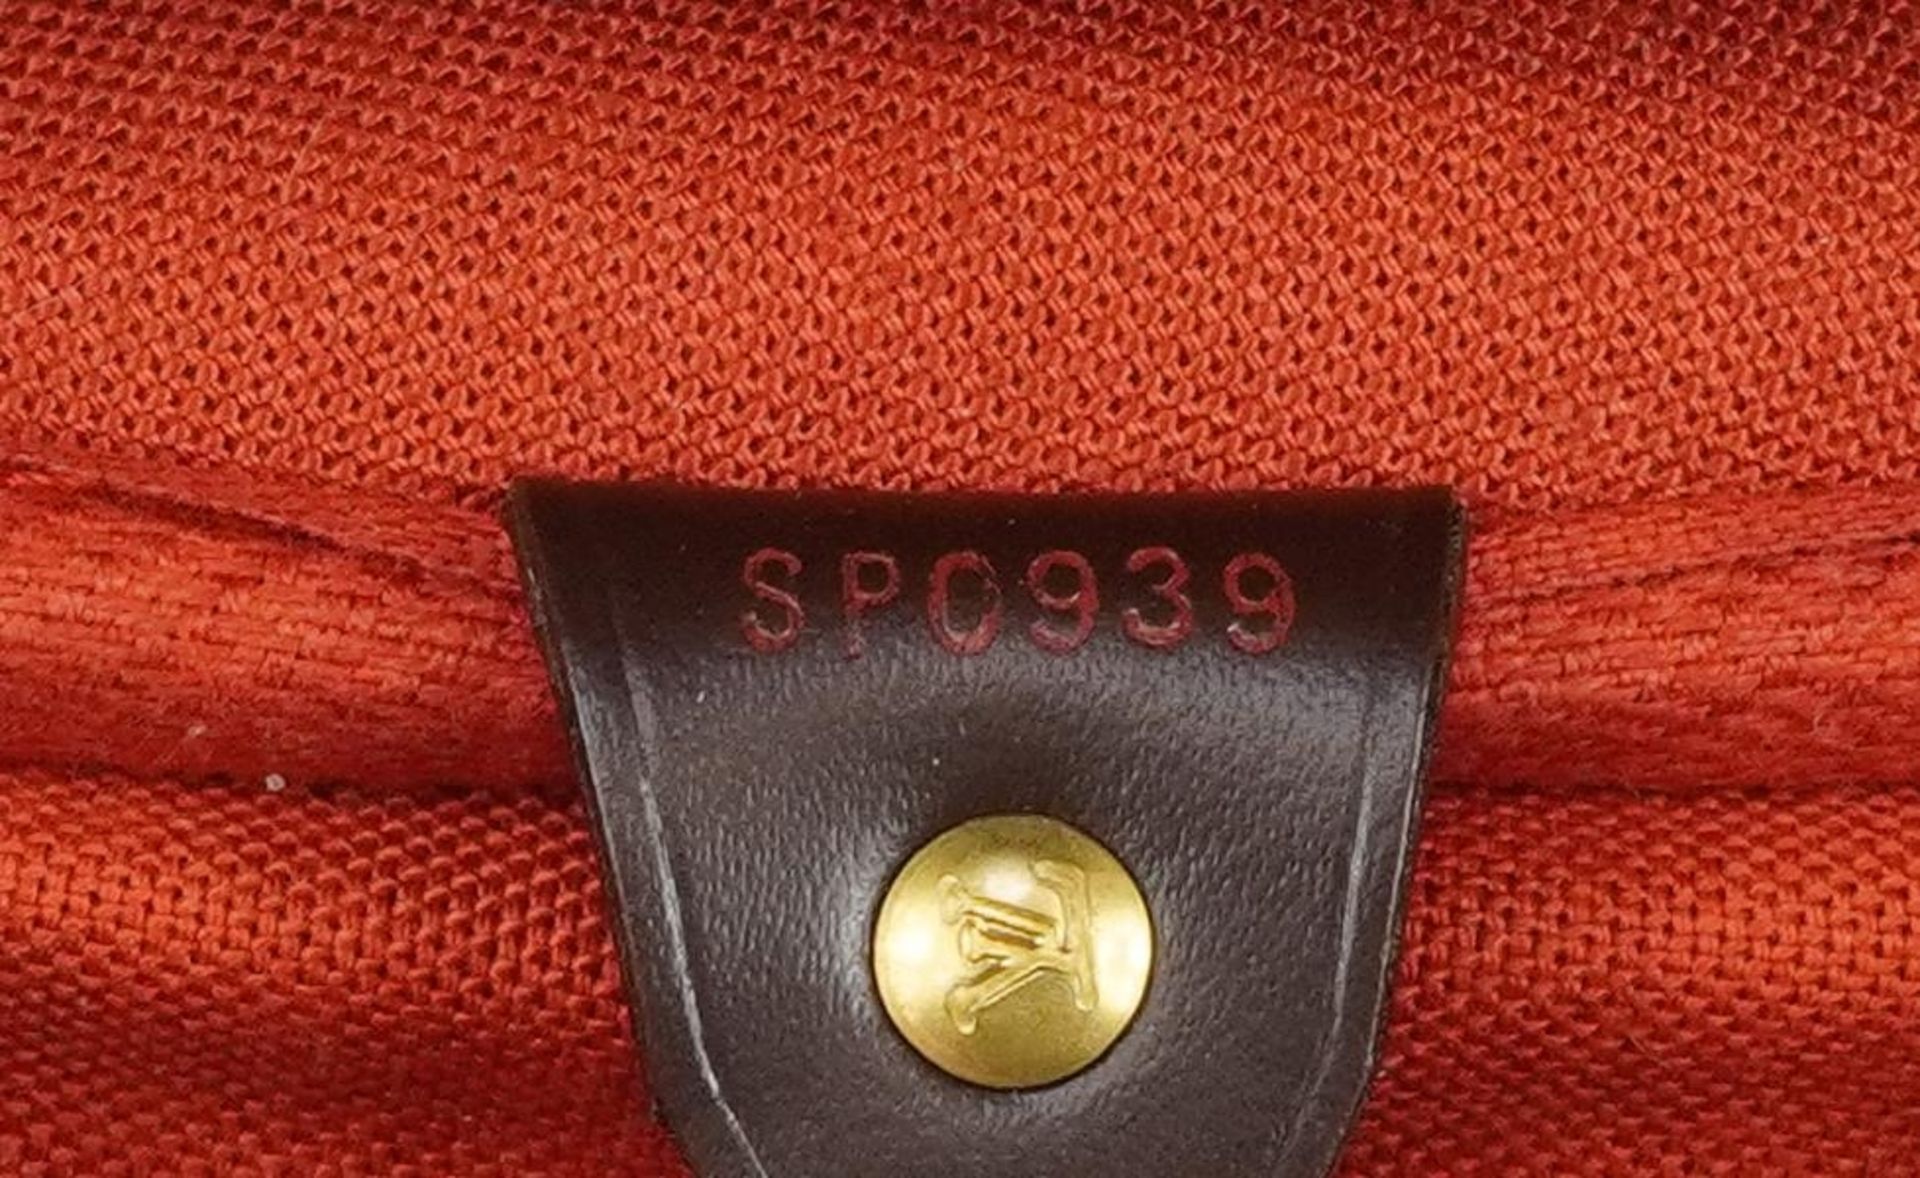 Louis Vuitton Damier Ebene Nolita satchel bag with two canvas straps, date code SP0939, 32cm x 44. - Image 5 of 7